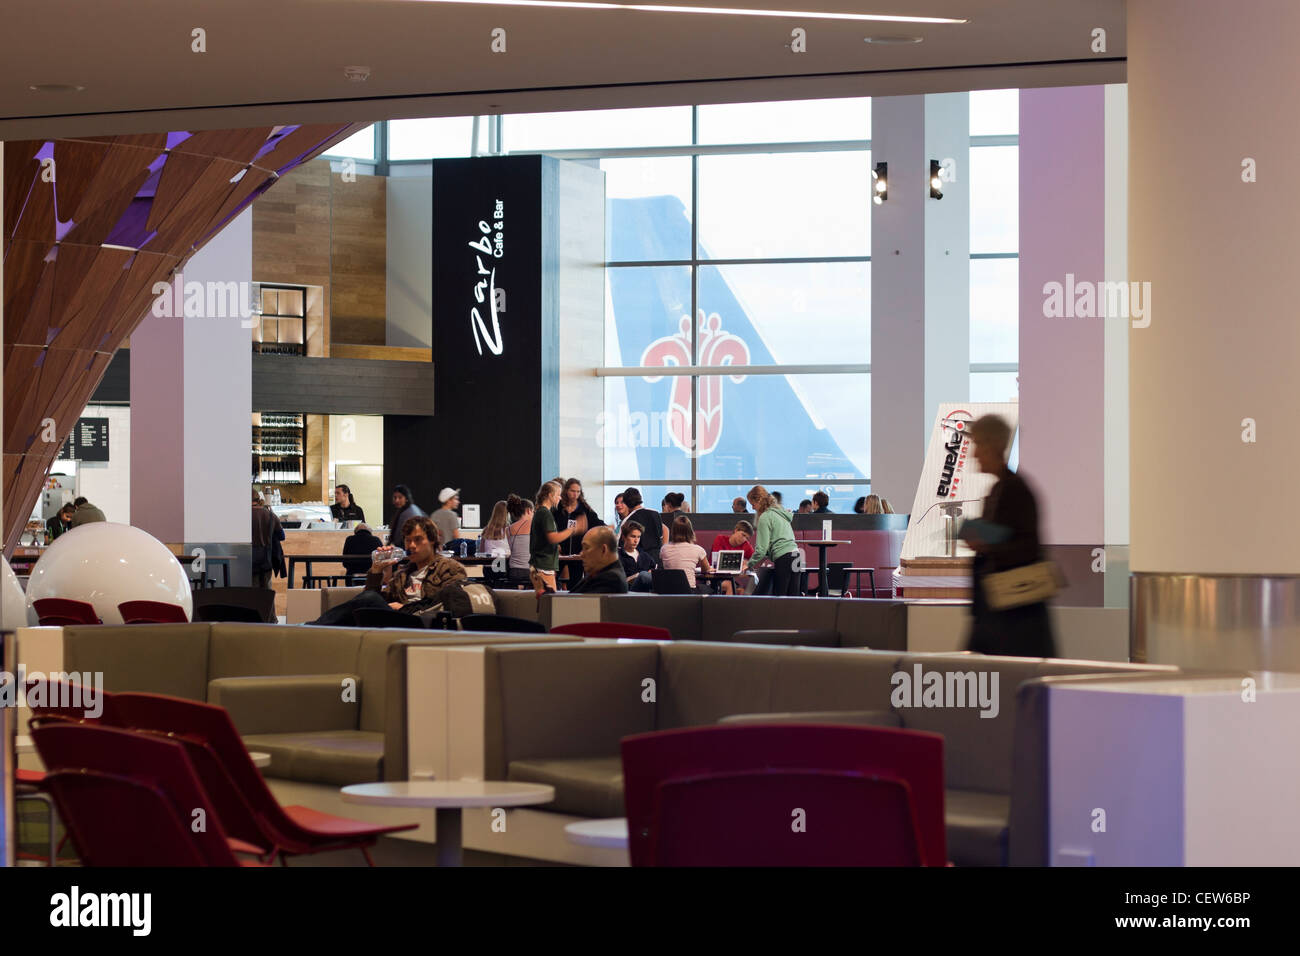 Persone in appoggio nel bar caffè all'interno di Auckland aeroporto internazionale di Auckland, in Nuova Zelanda. Foto Stock